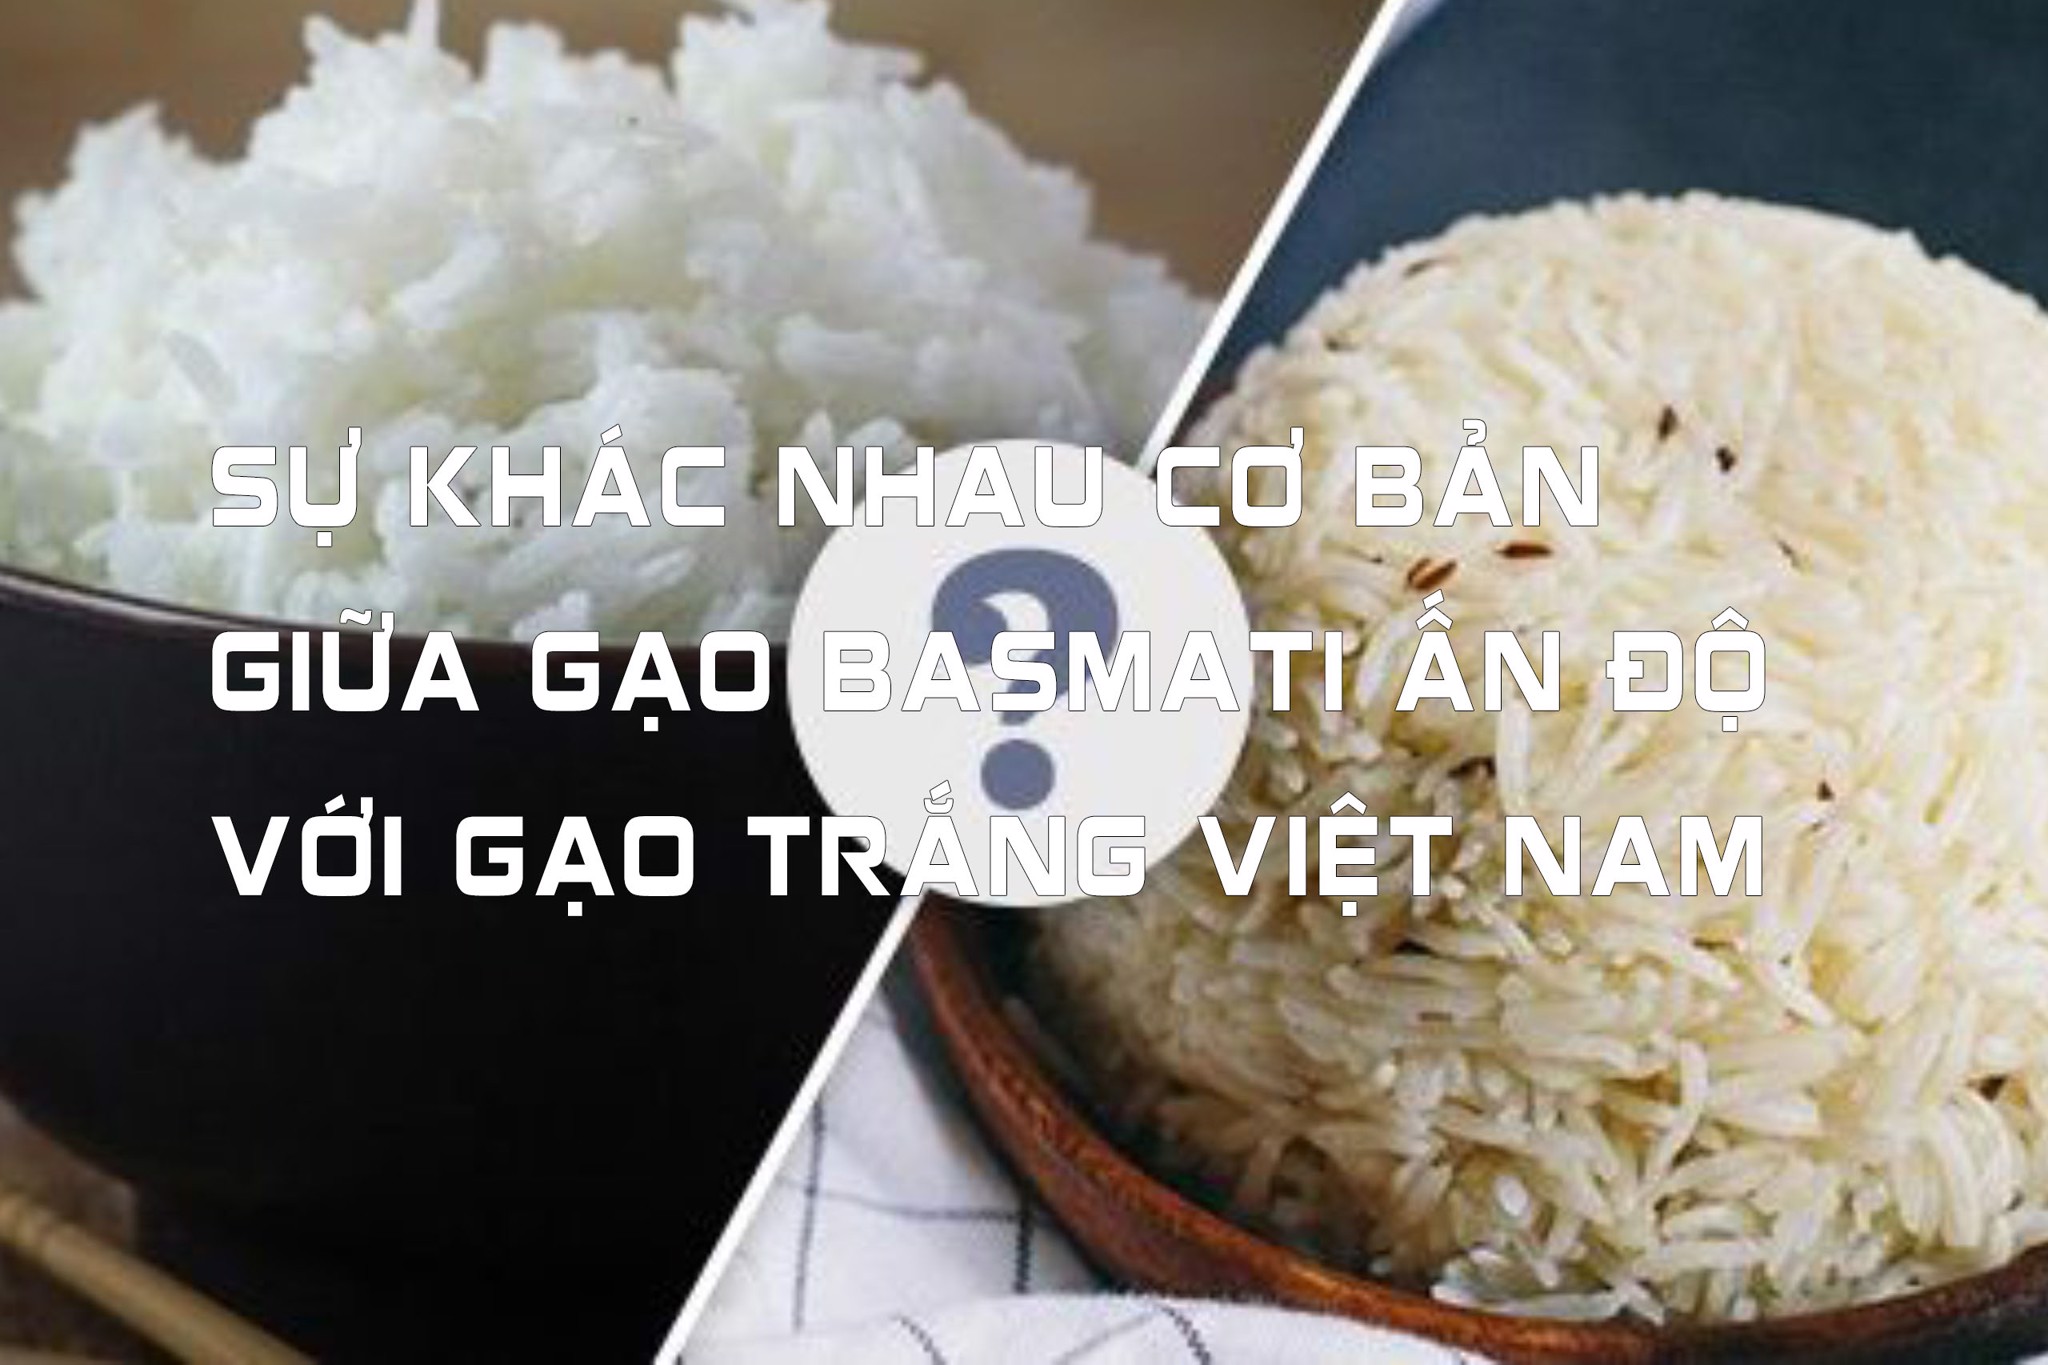 Sự khác nhau cơ bản giữa gạo basmati Ấn Độ với gạo trắng Việt Nam